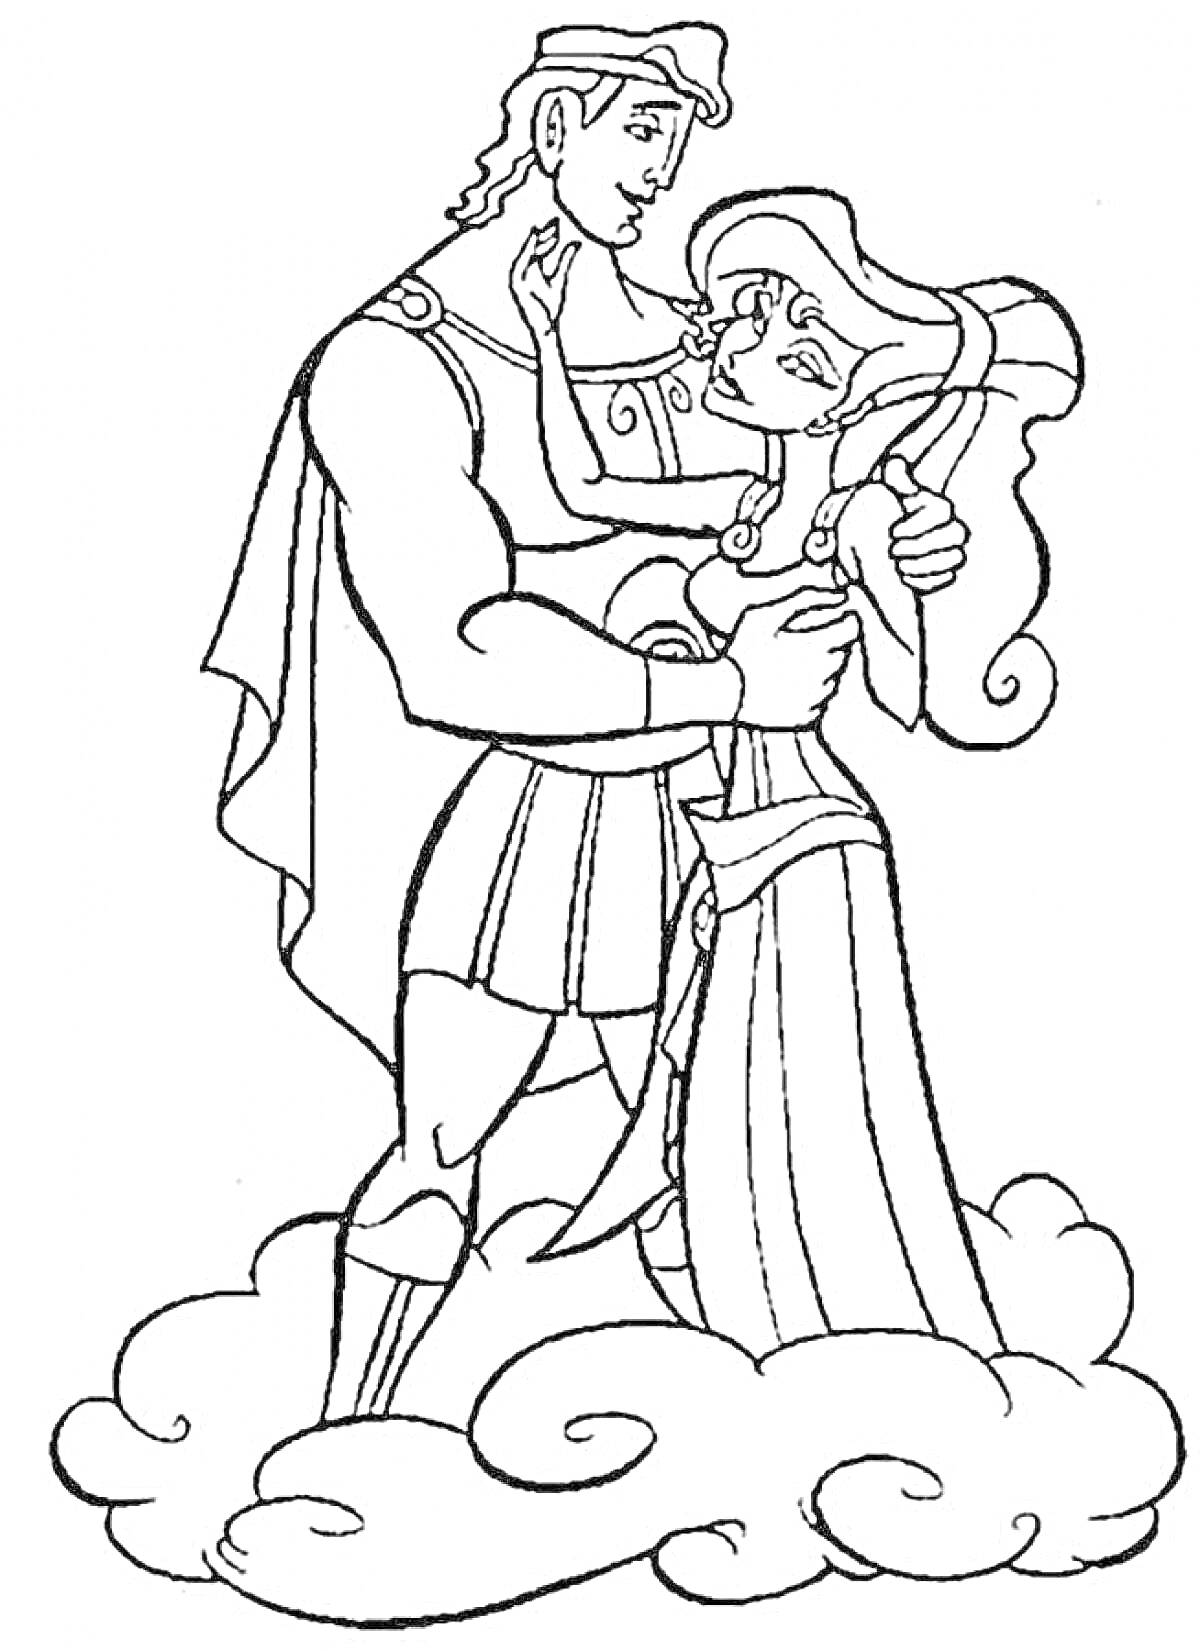 Геракл и женщина в длинном платье на облаке